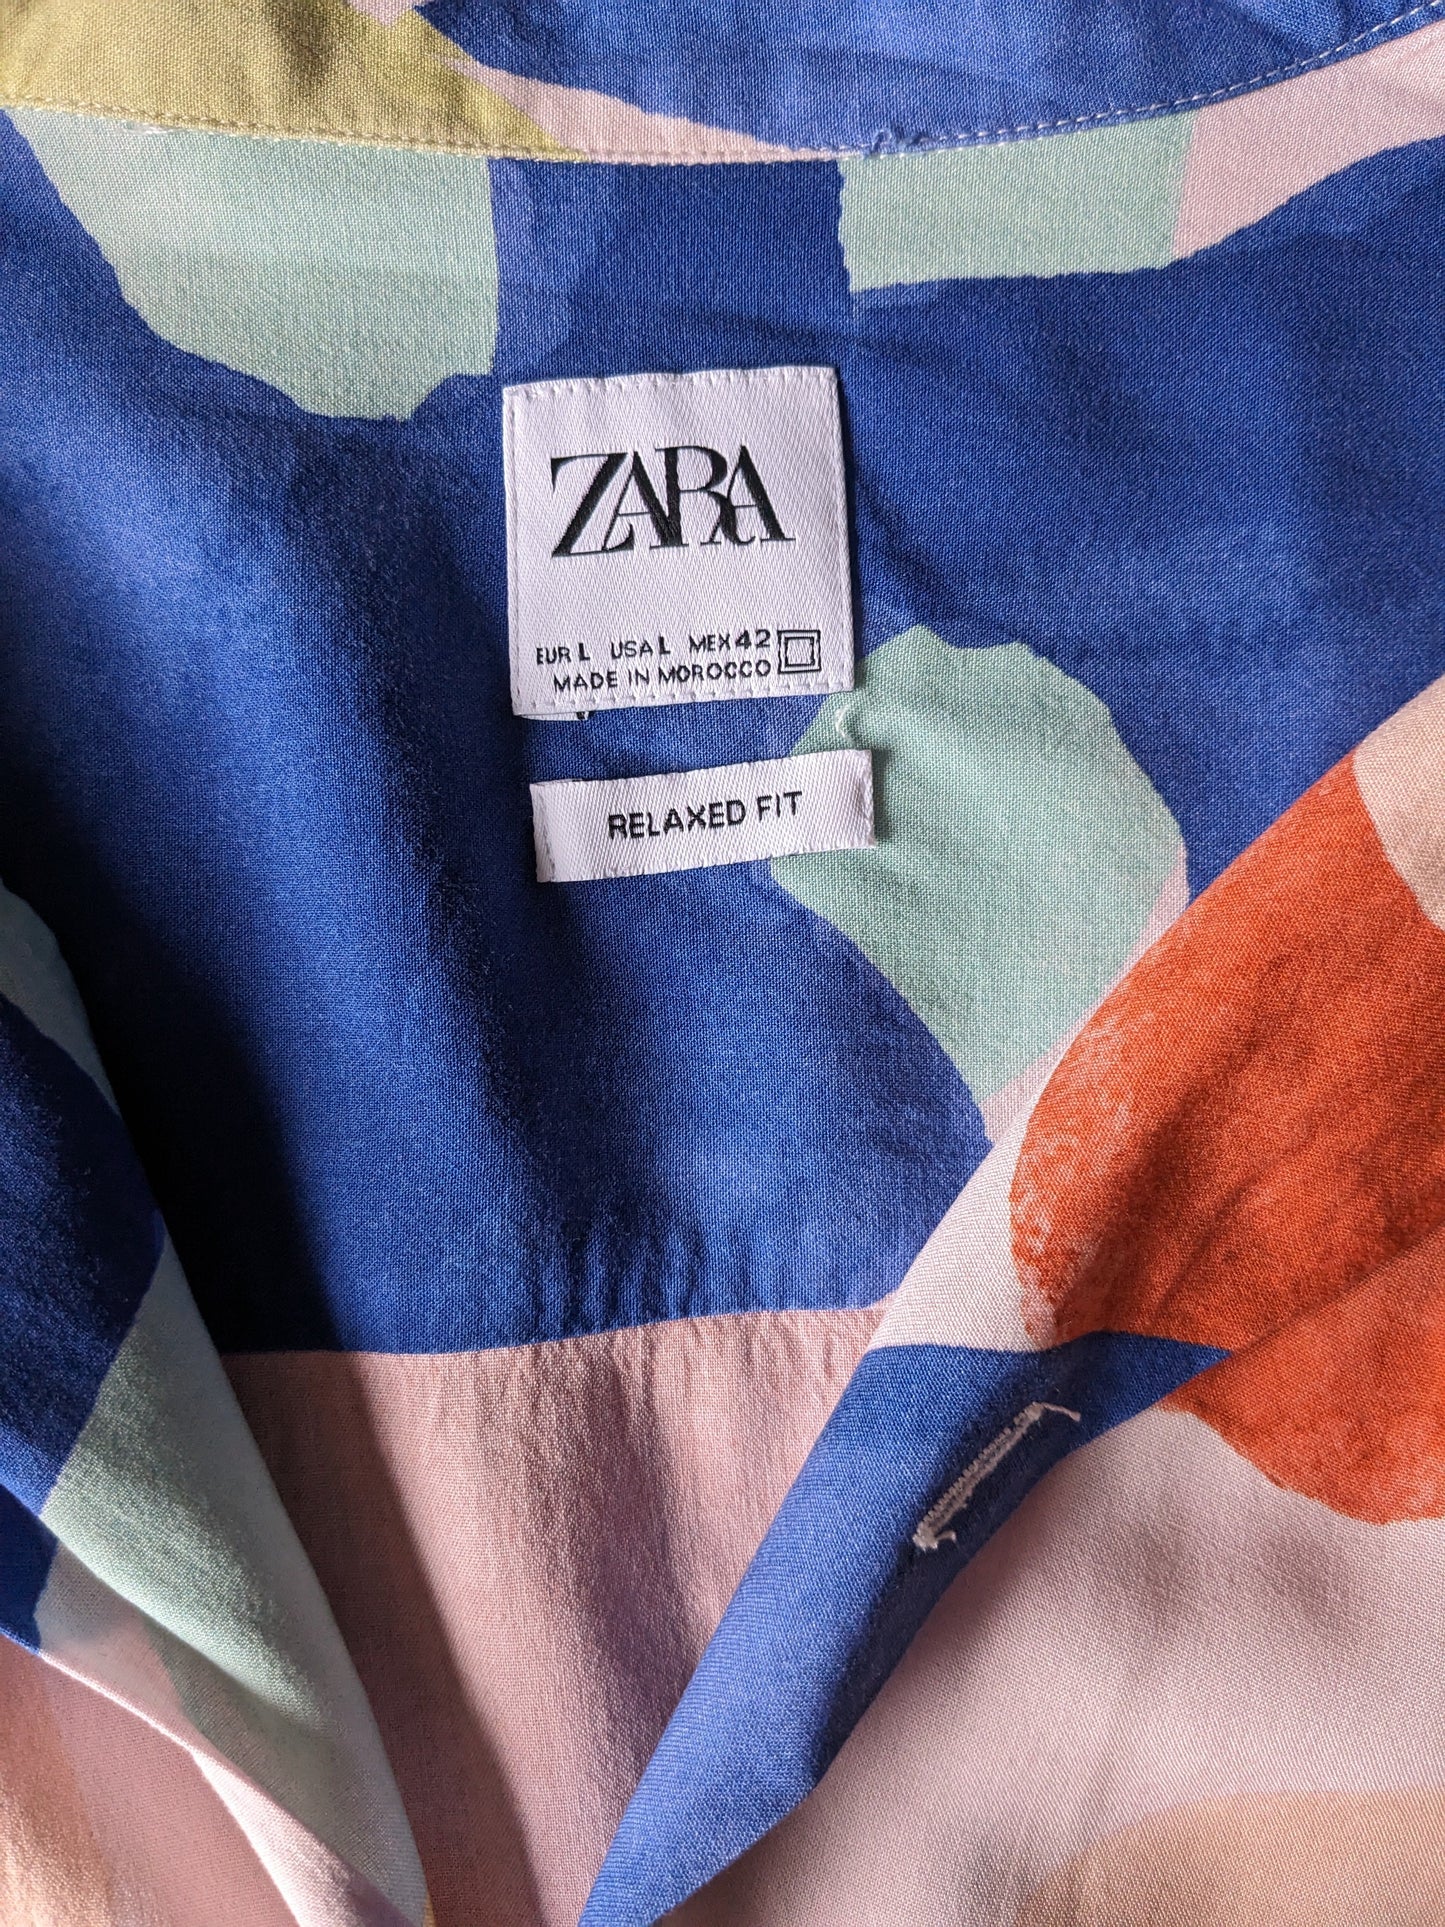 Zara print overhemd korte mouw. Roze oranje geel blauwe groene print. Maat L. Relaxed Fit.